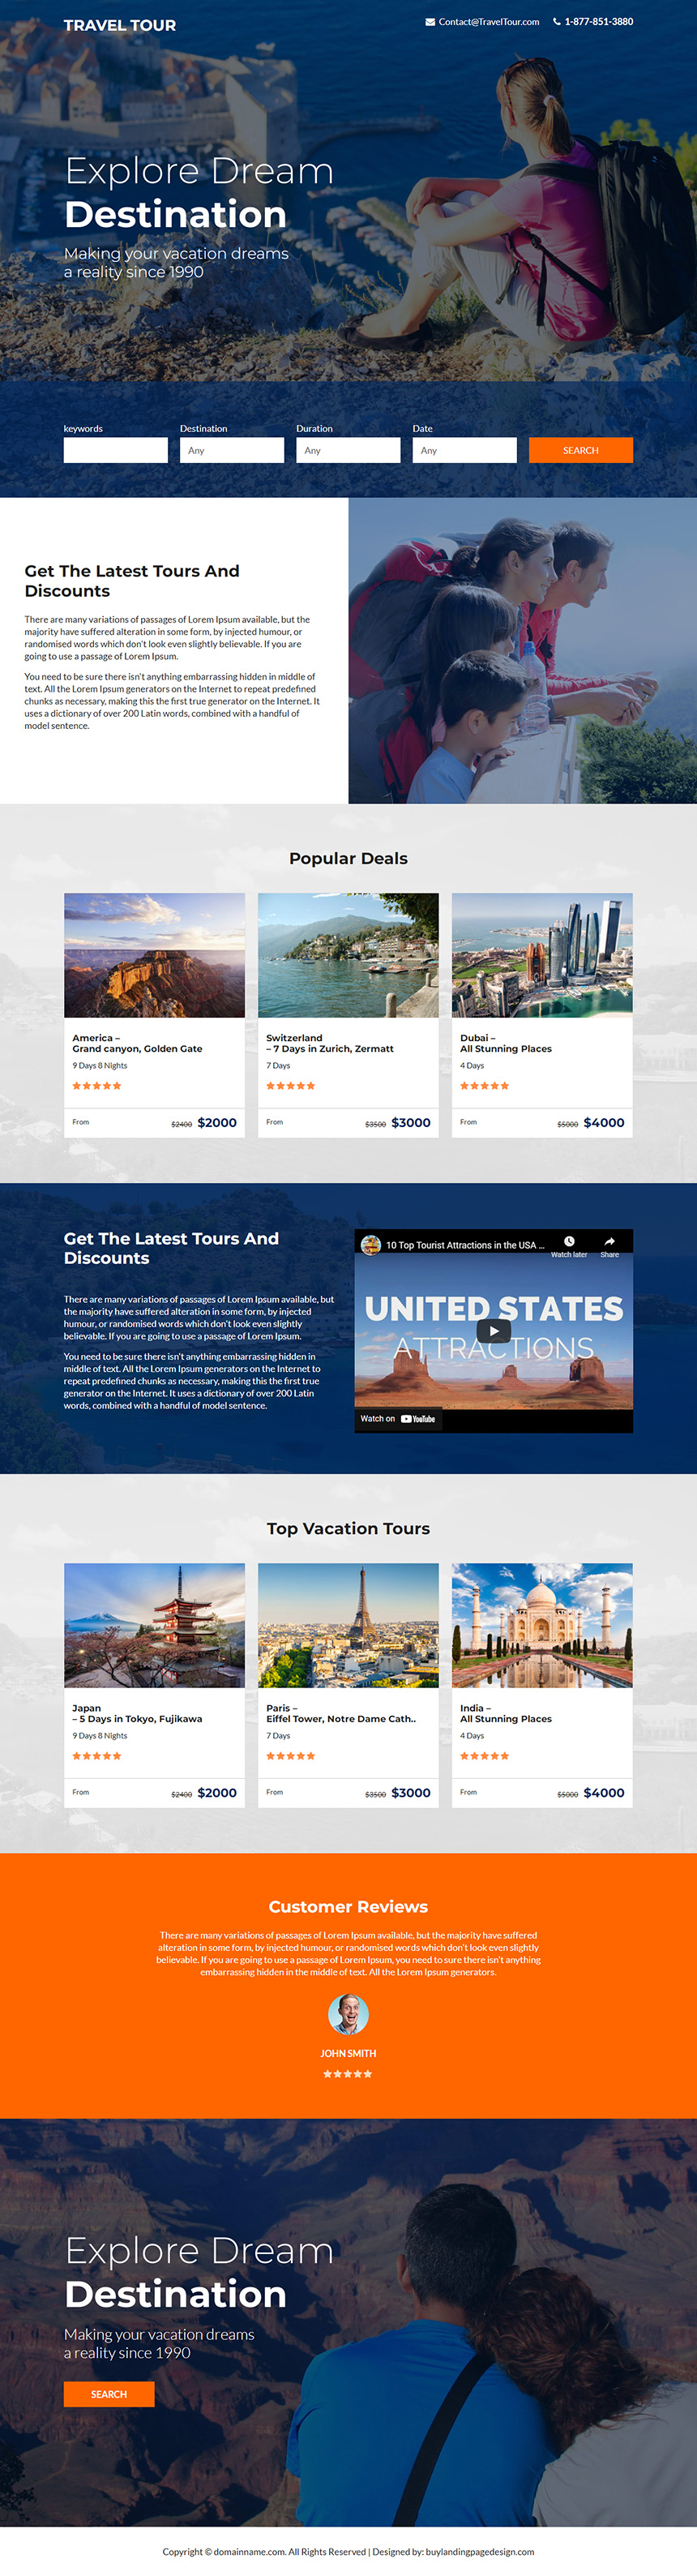 dream destination tour agency landing page